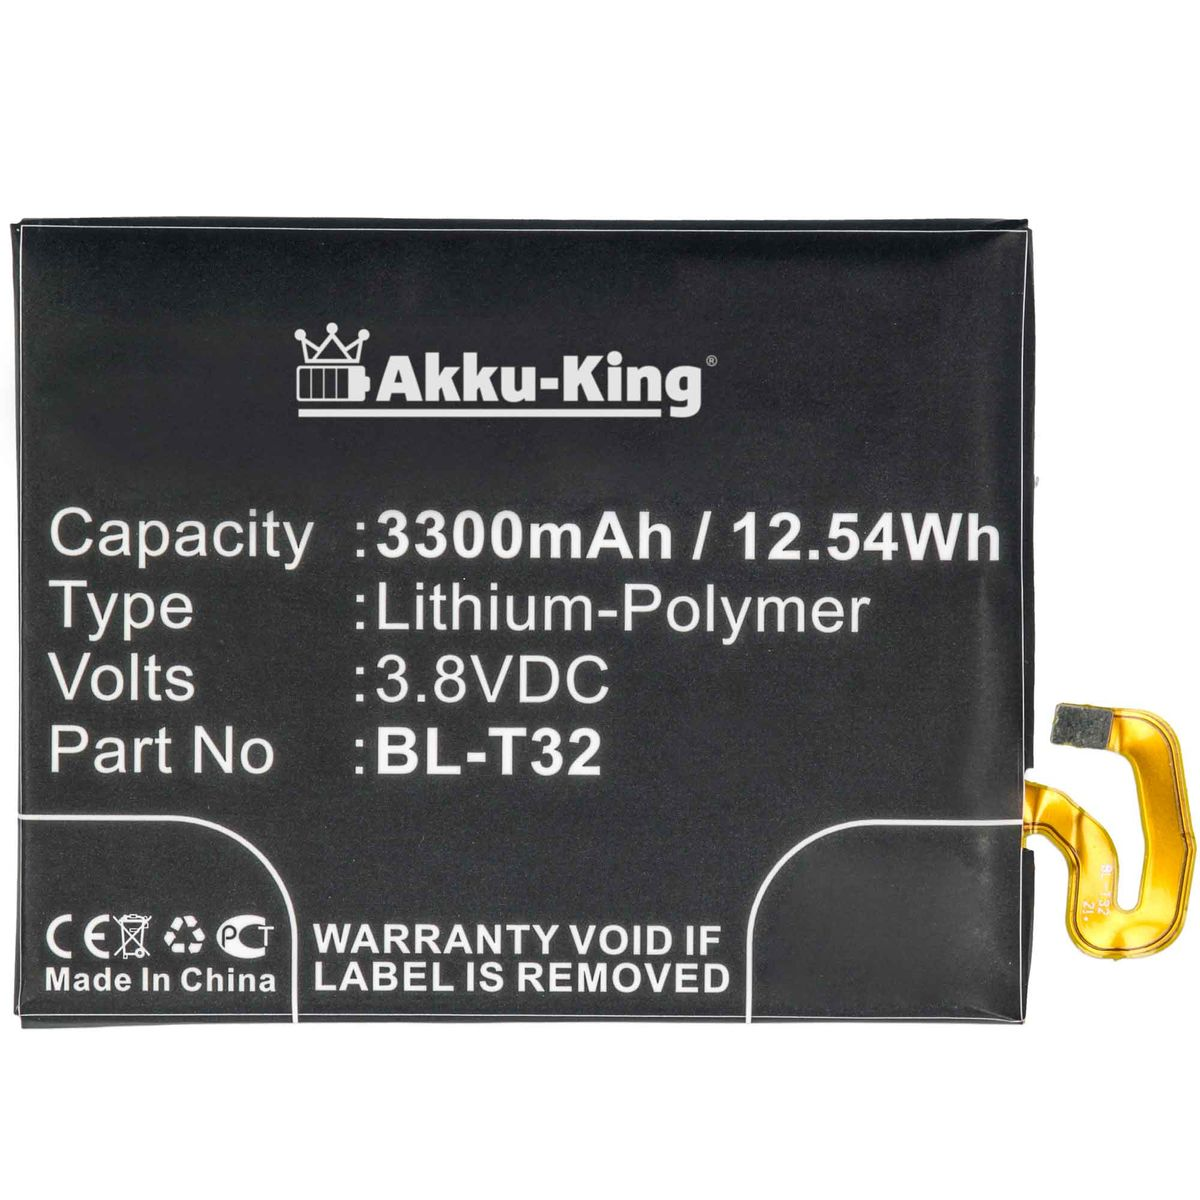 AKKU-KING Akku kompatibel mit BL-T32 Li-Polymer 3300mAh Handy-Akku, 3.8 LG Volt